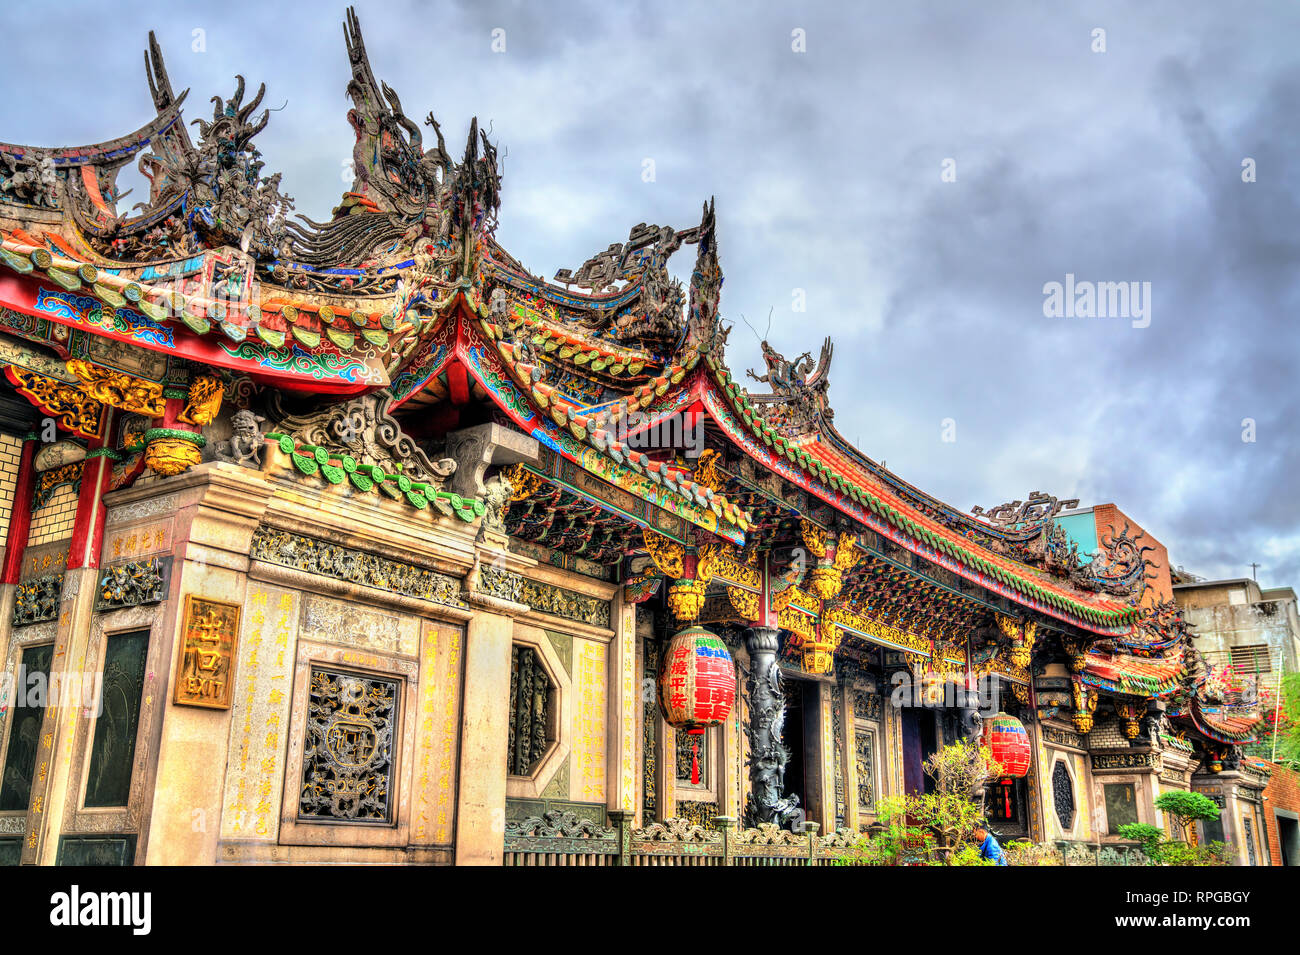 Longshan Temple in Taipei, Taiwan Stock Photo